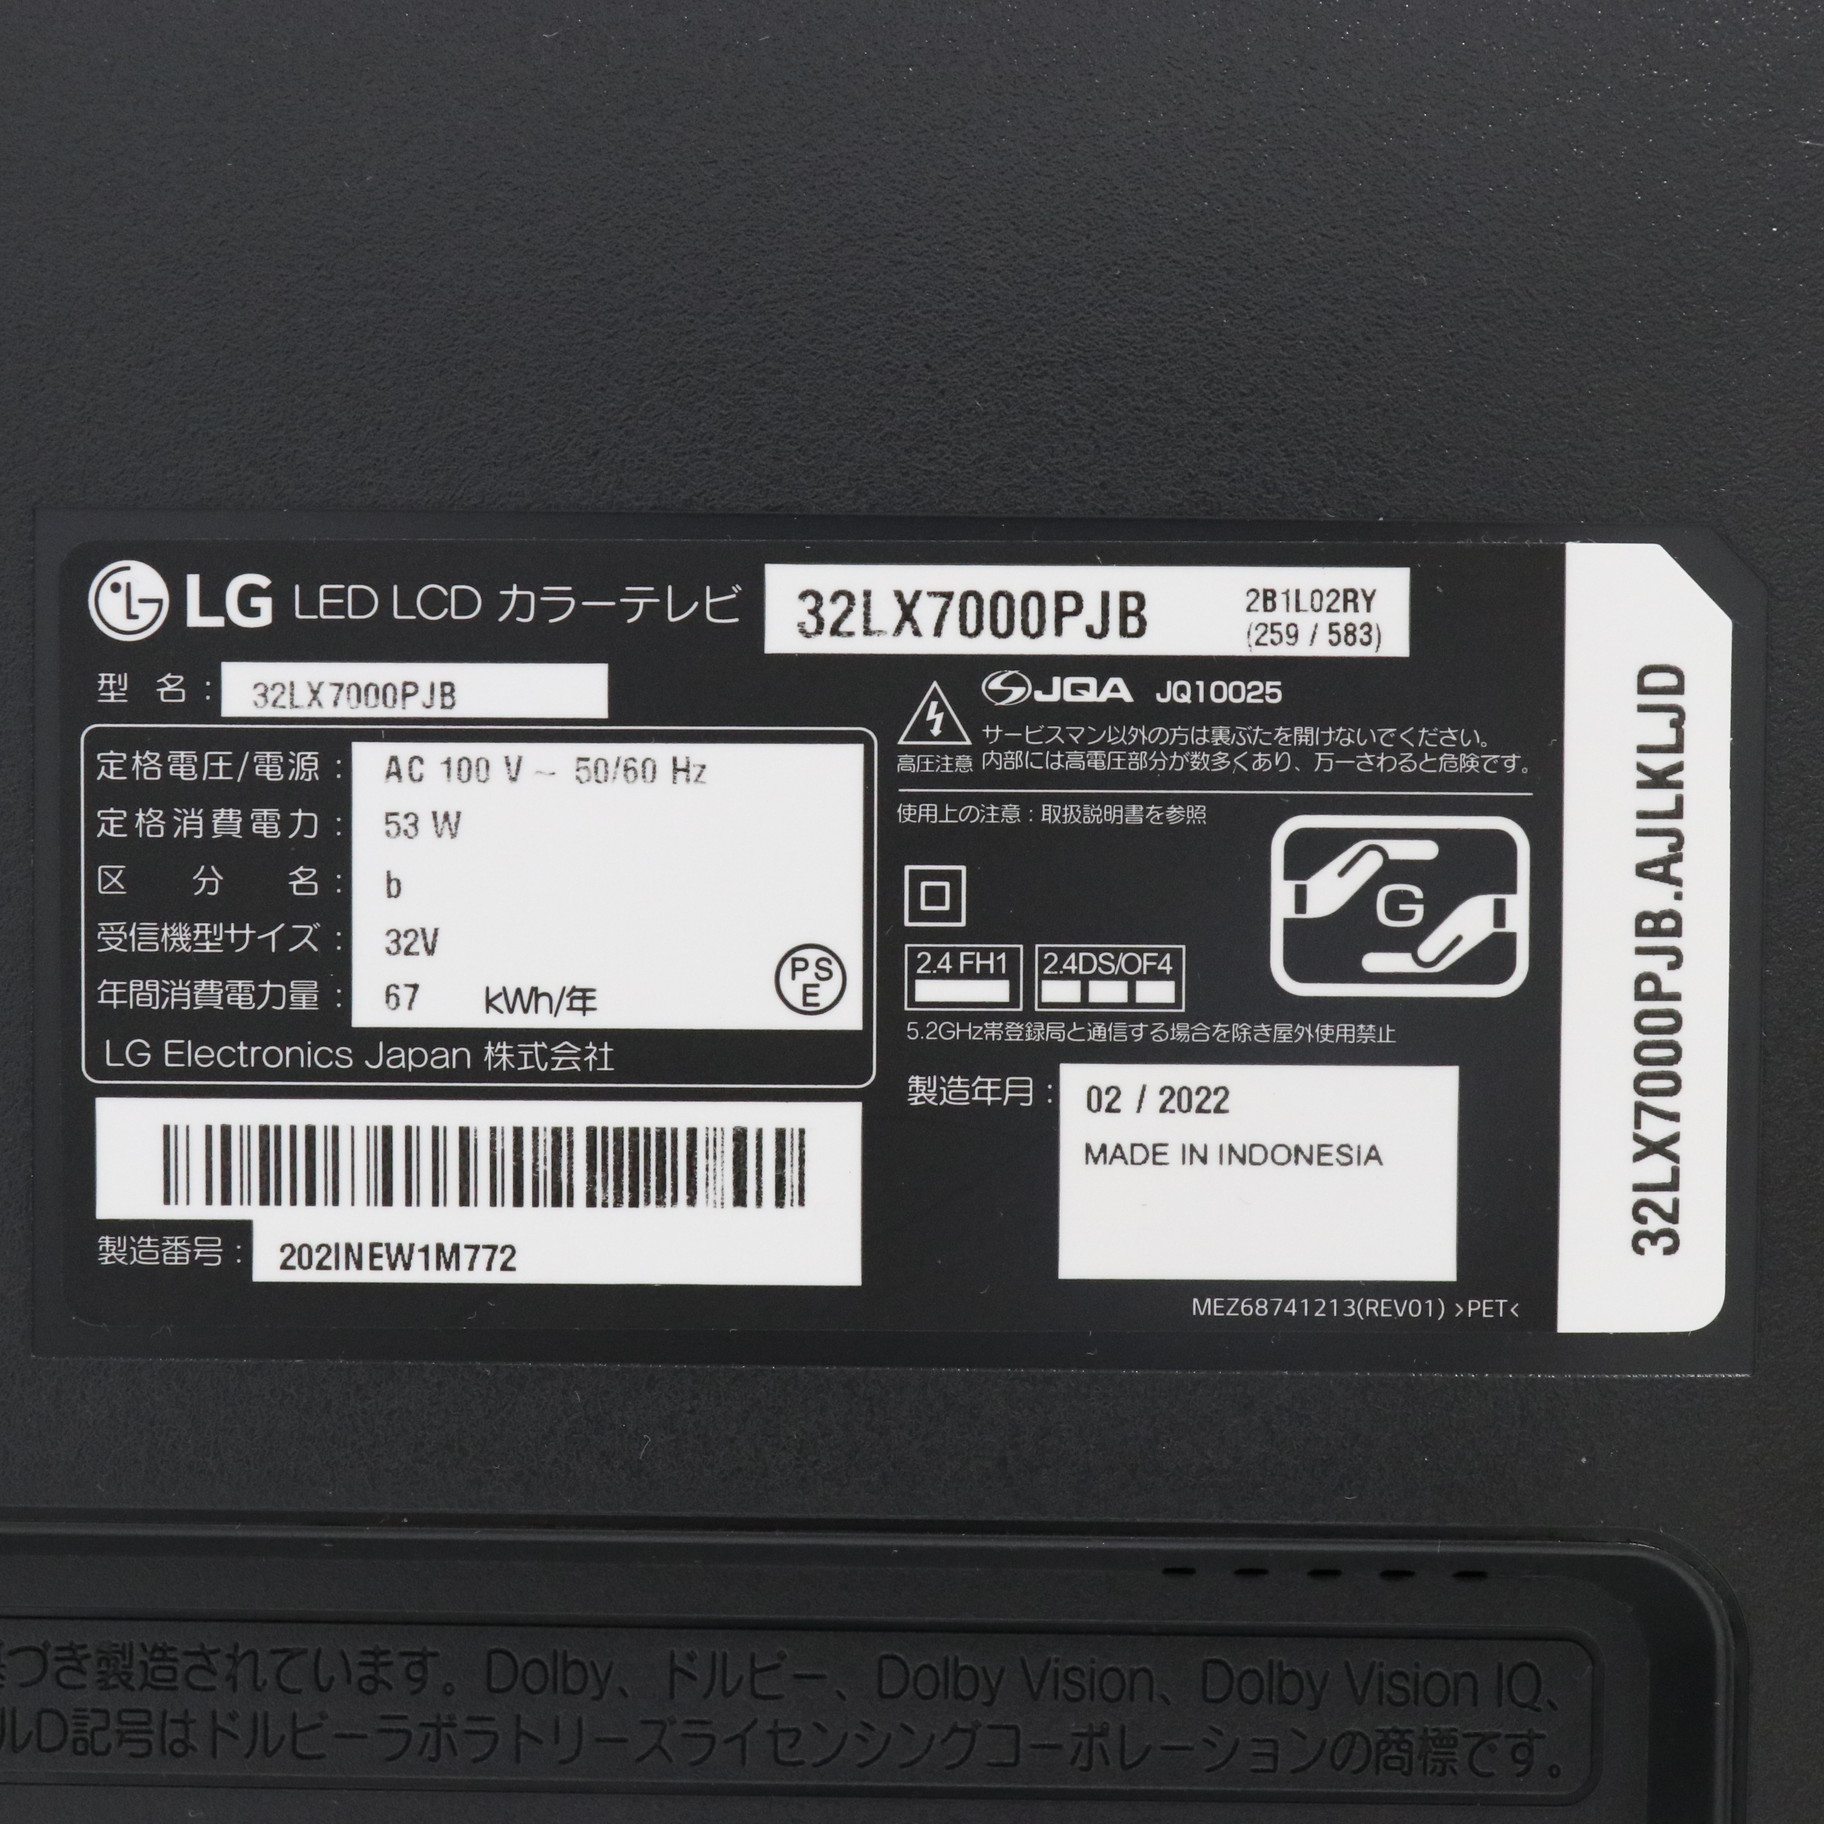 LG 32LX7000PJB 液晶テレビ 32型 - テレビ